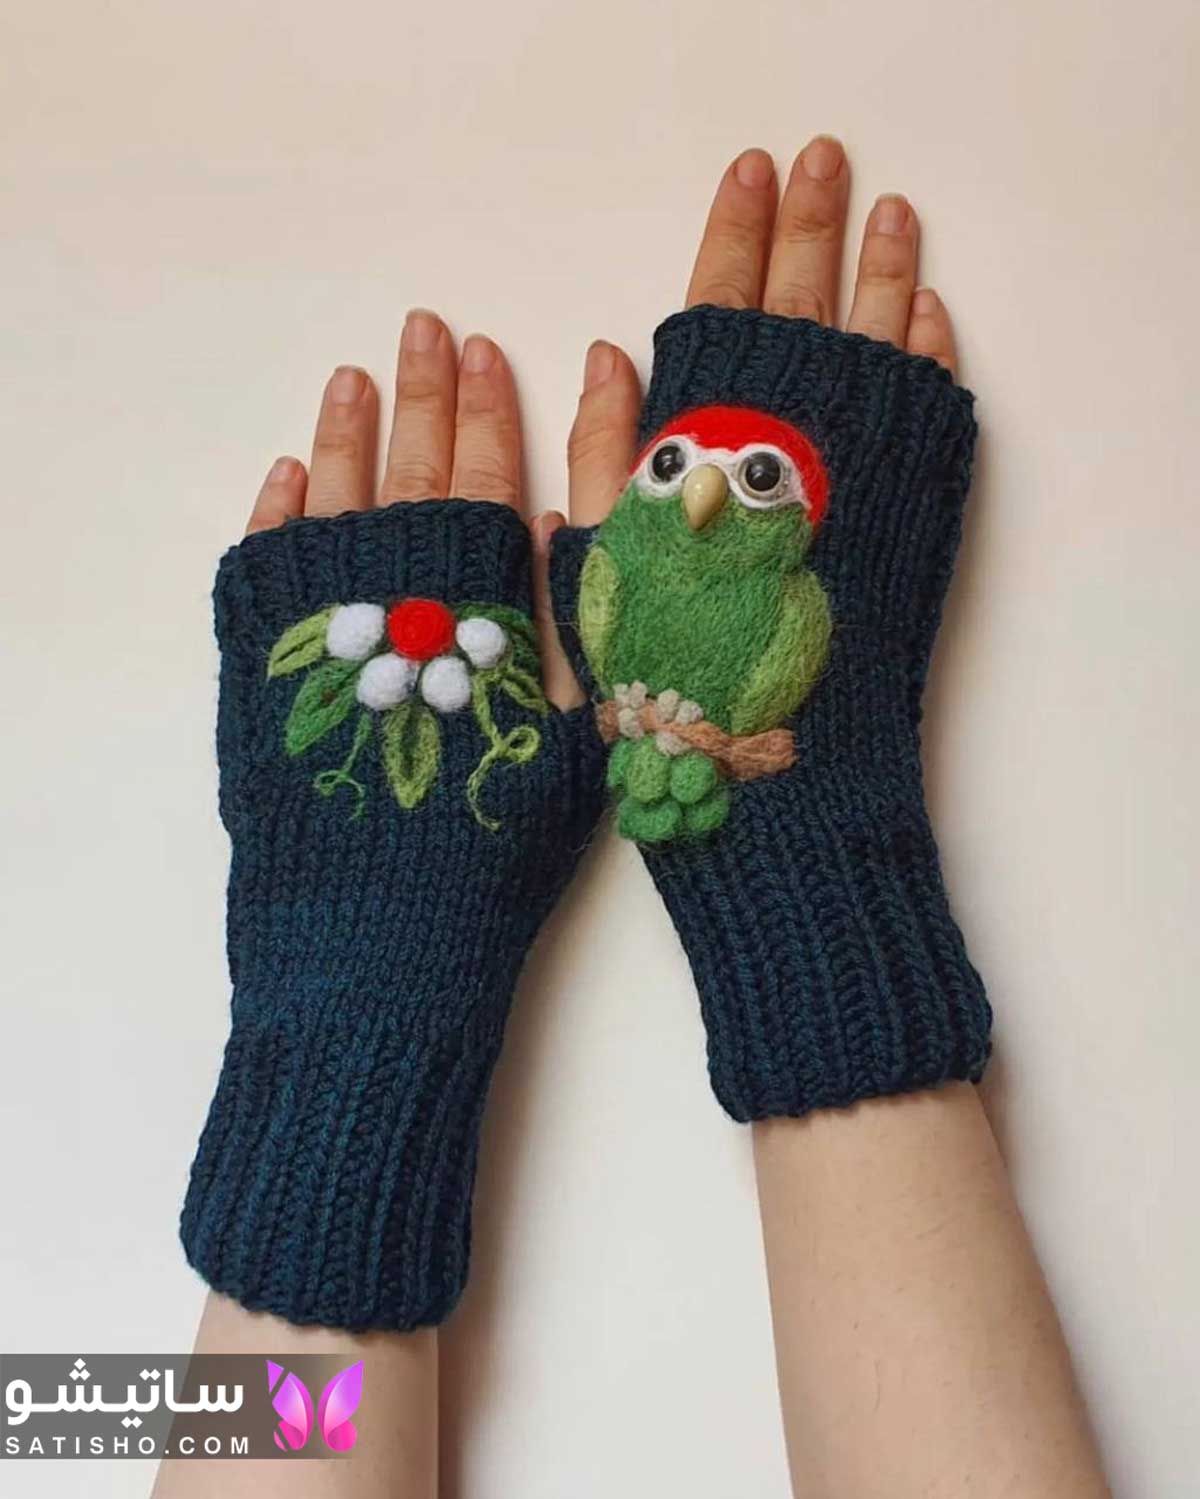 satisho4 - دستکش بافتنی بچه گانه، گرمای دلنشین در روزهای سرد برای دست بچه ها